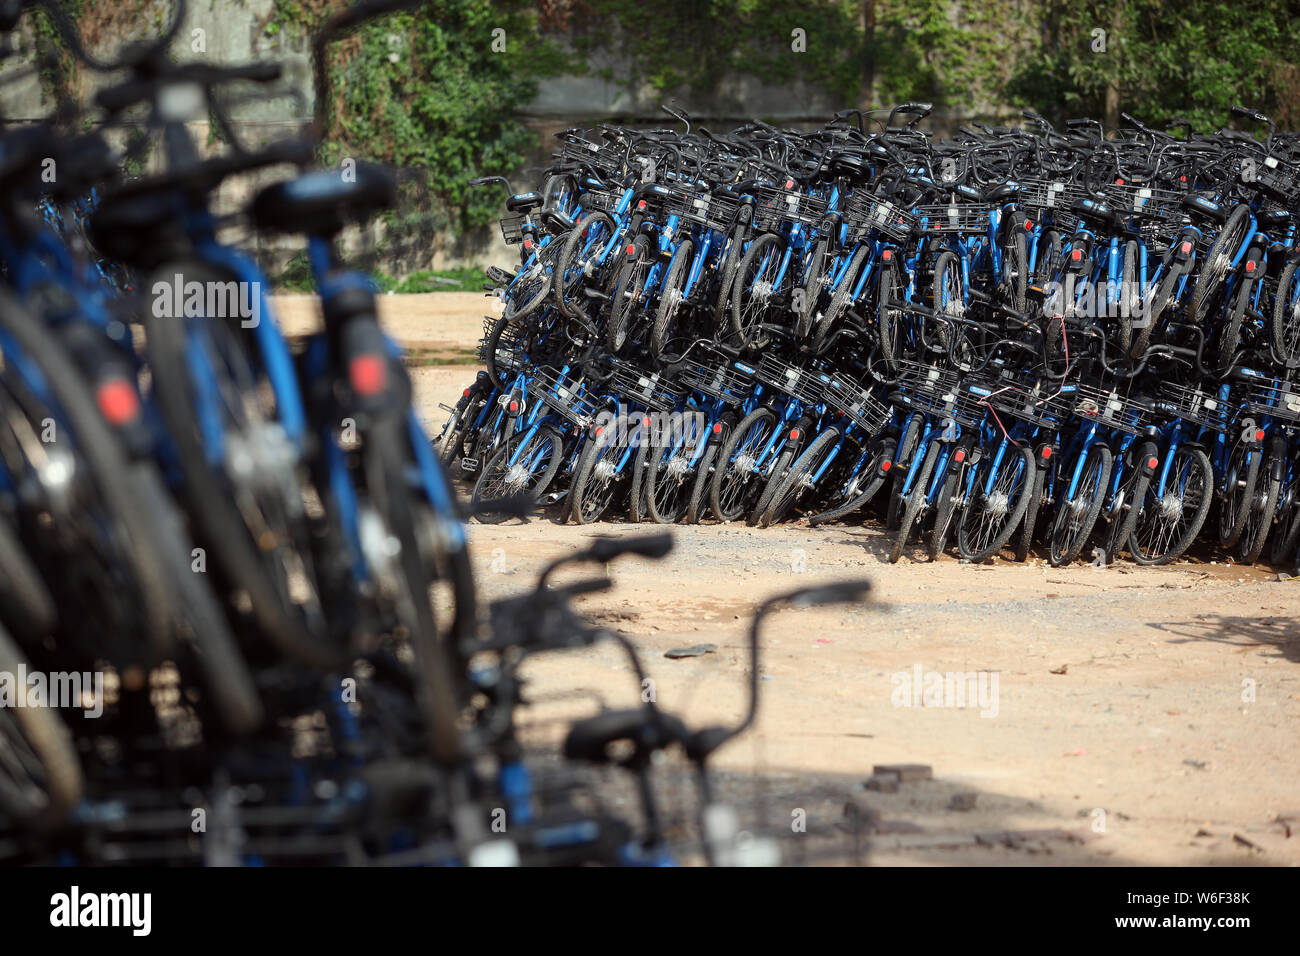 Ein Blick auf Bluegogo Gemeinschafts-Fahrräder der chinesischen Taxifahrer hageln und Car-sharing service Didi Chuxing cramming einen Parkplatz in Shenzhen City, South China Stockfoto